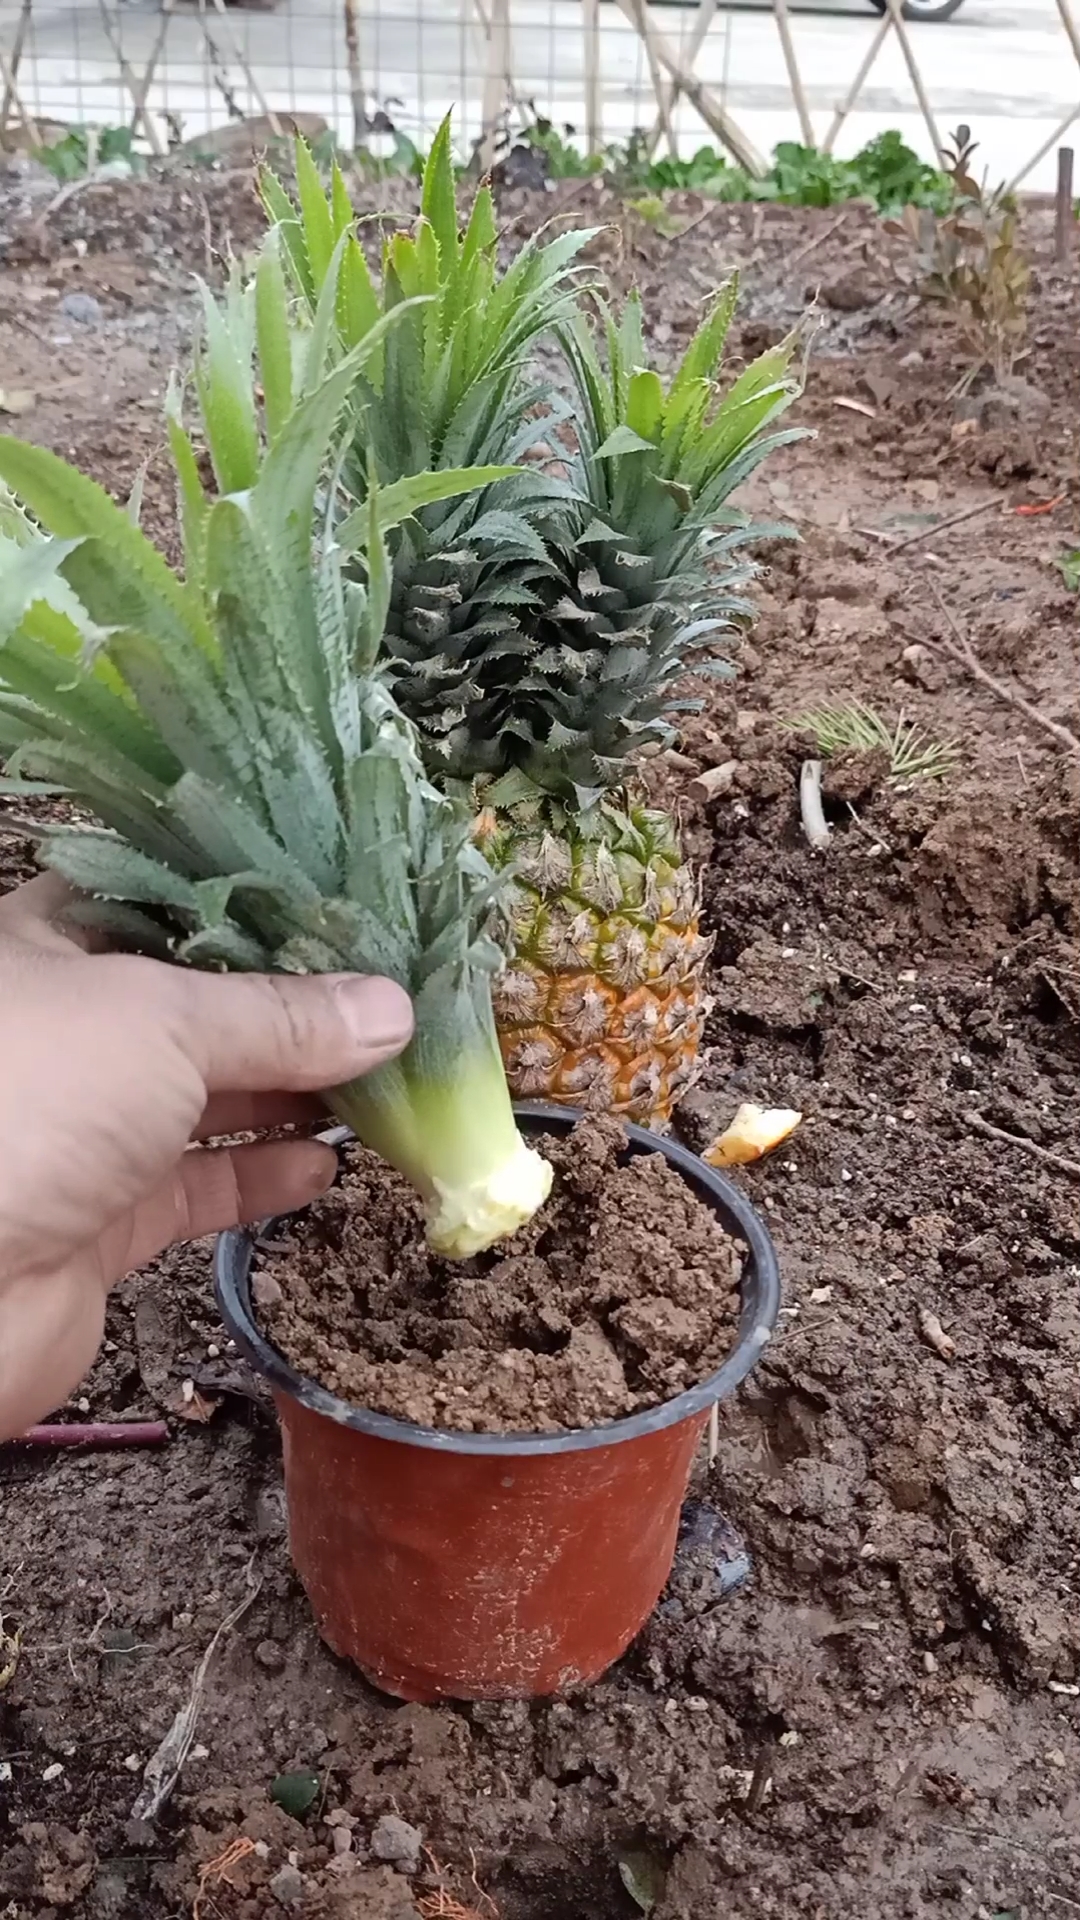 菠萝盆栽种植方法图片